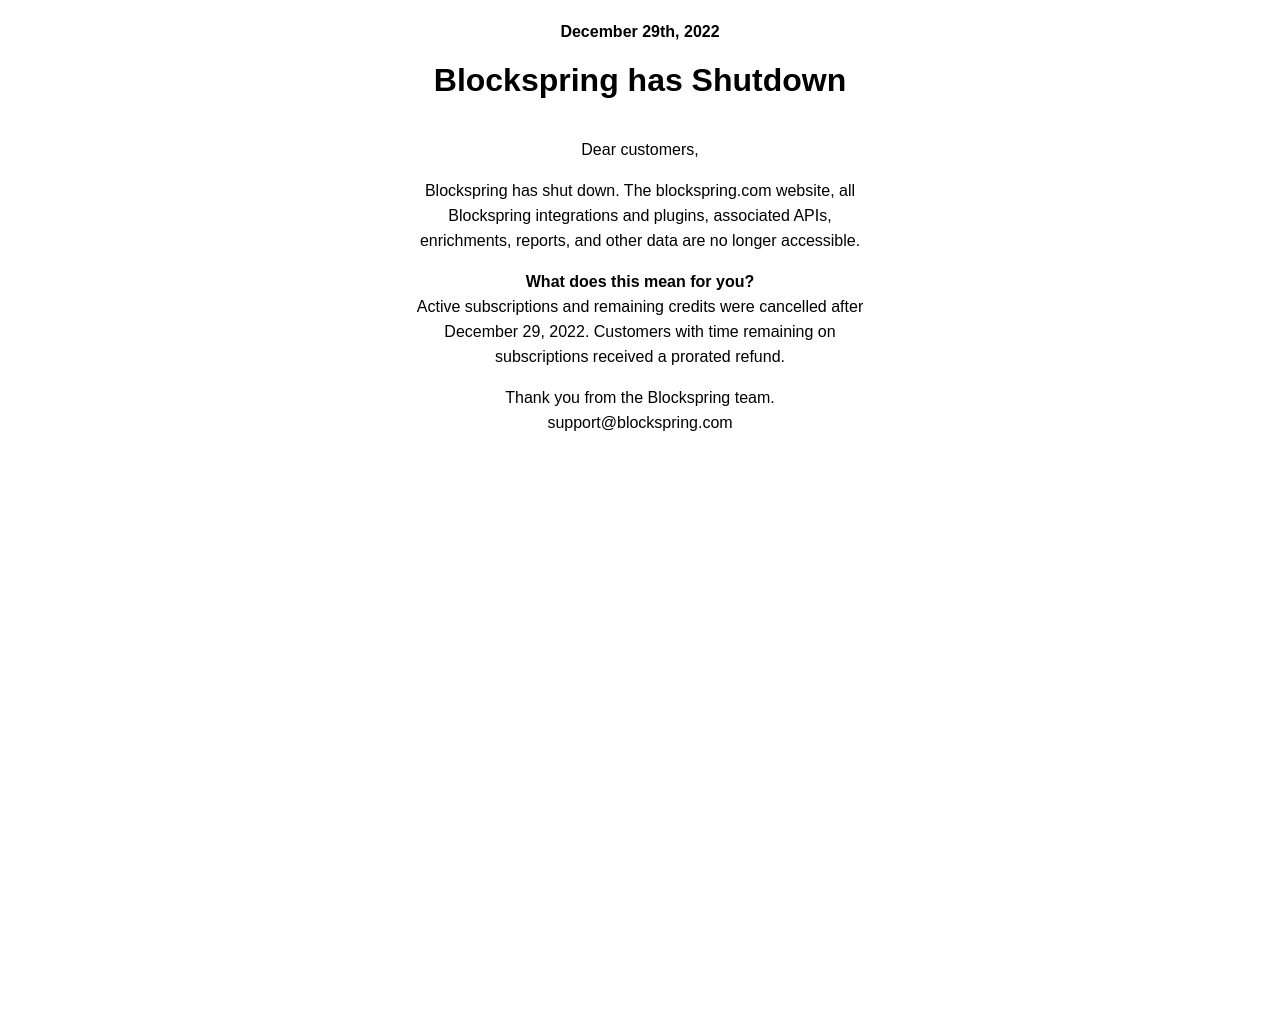 blockspring.com